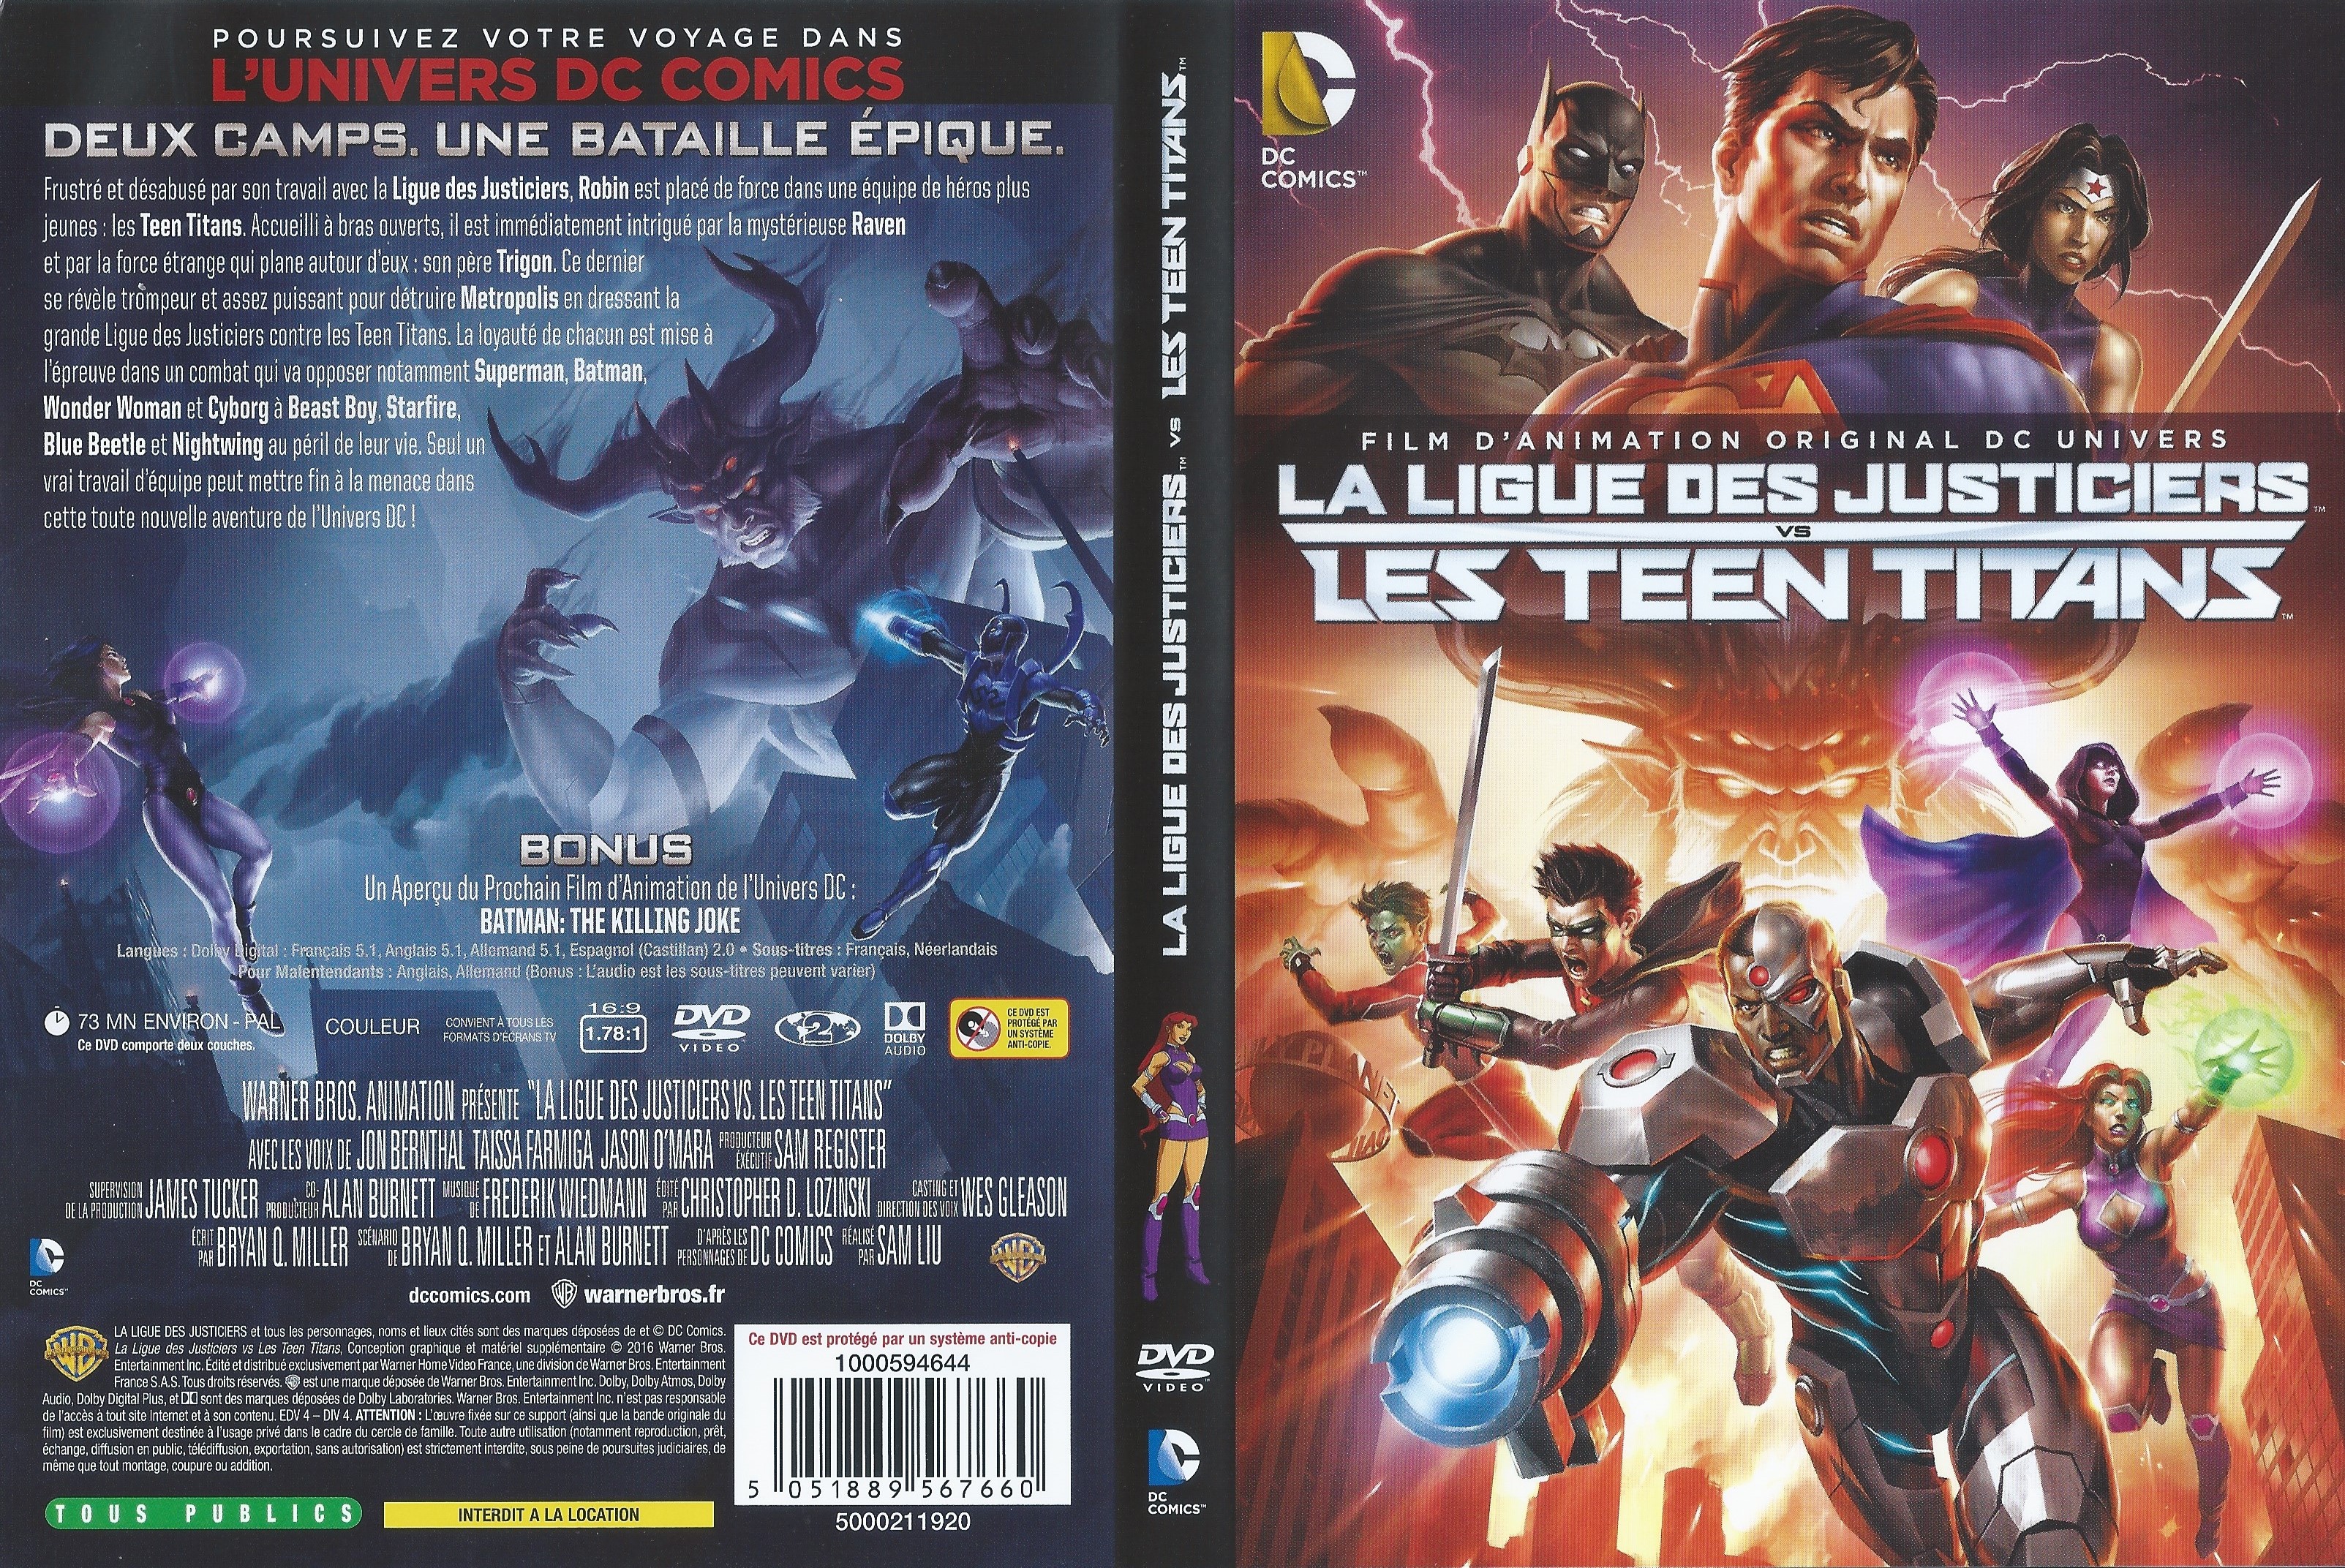 Jaquette DVD La ligue des justiciers Les teen titans